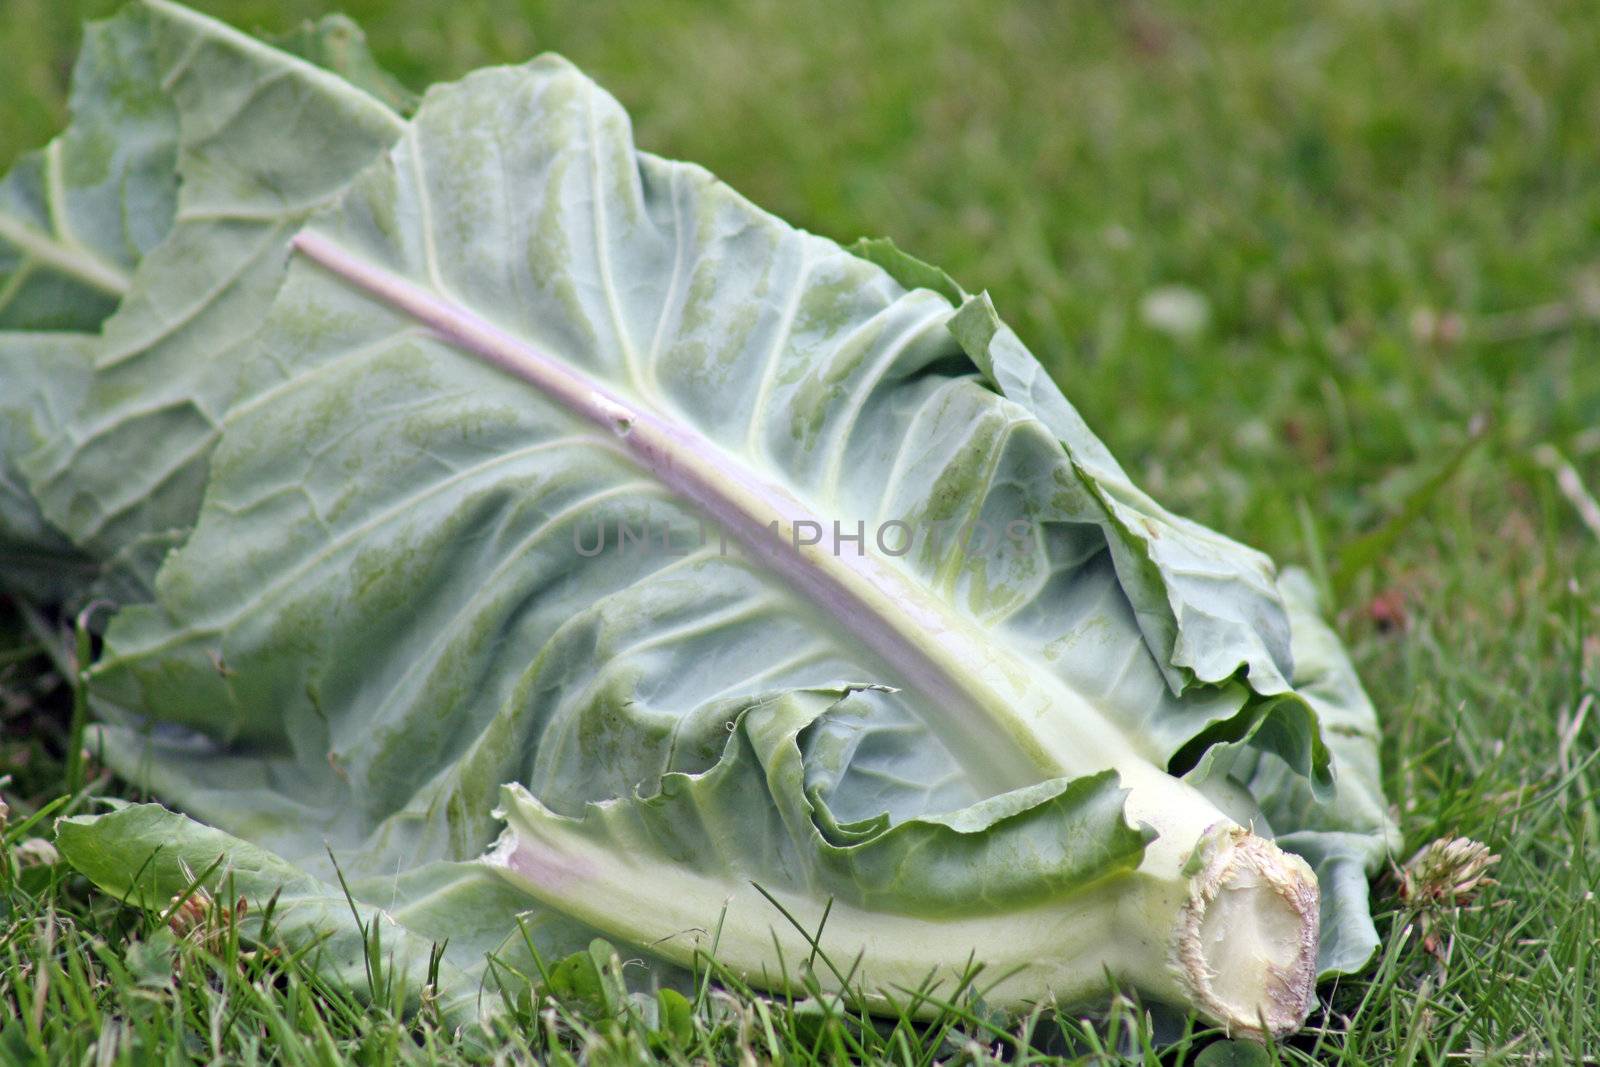 half eaten cabbage